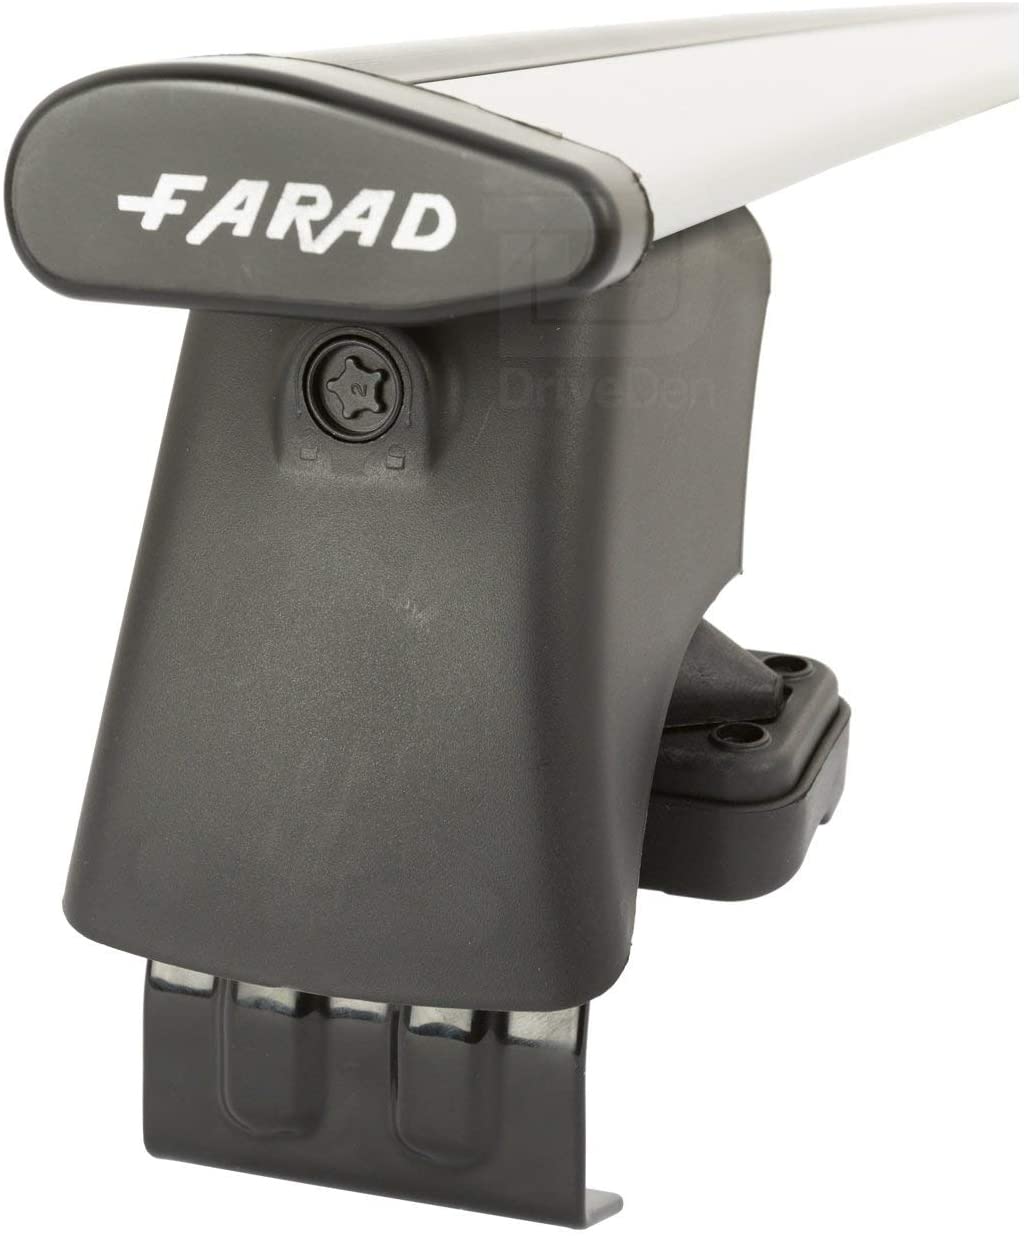 FARAD-Kit H2 per barre portatutto - Fiat Punto 1999-2011 (senza corrimano)